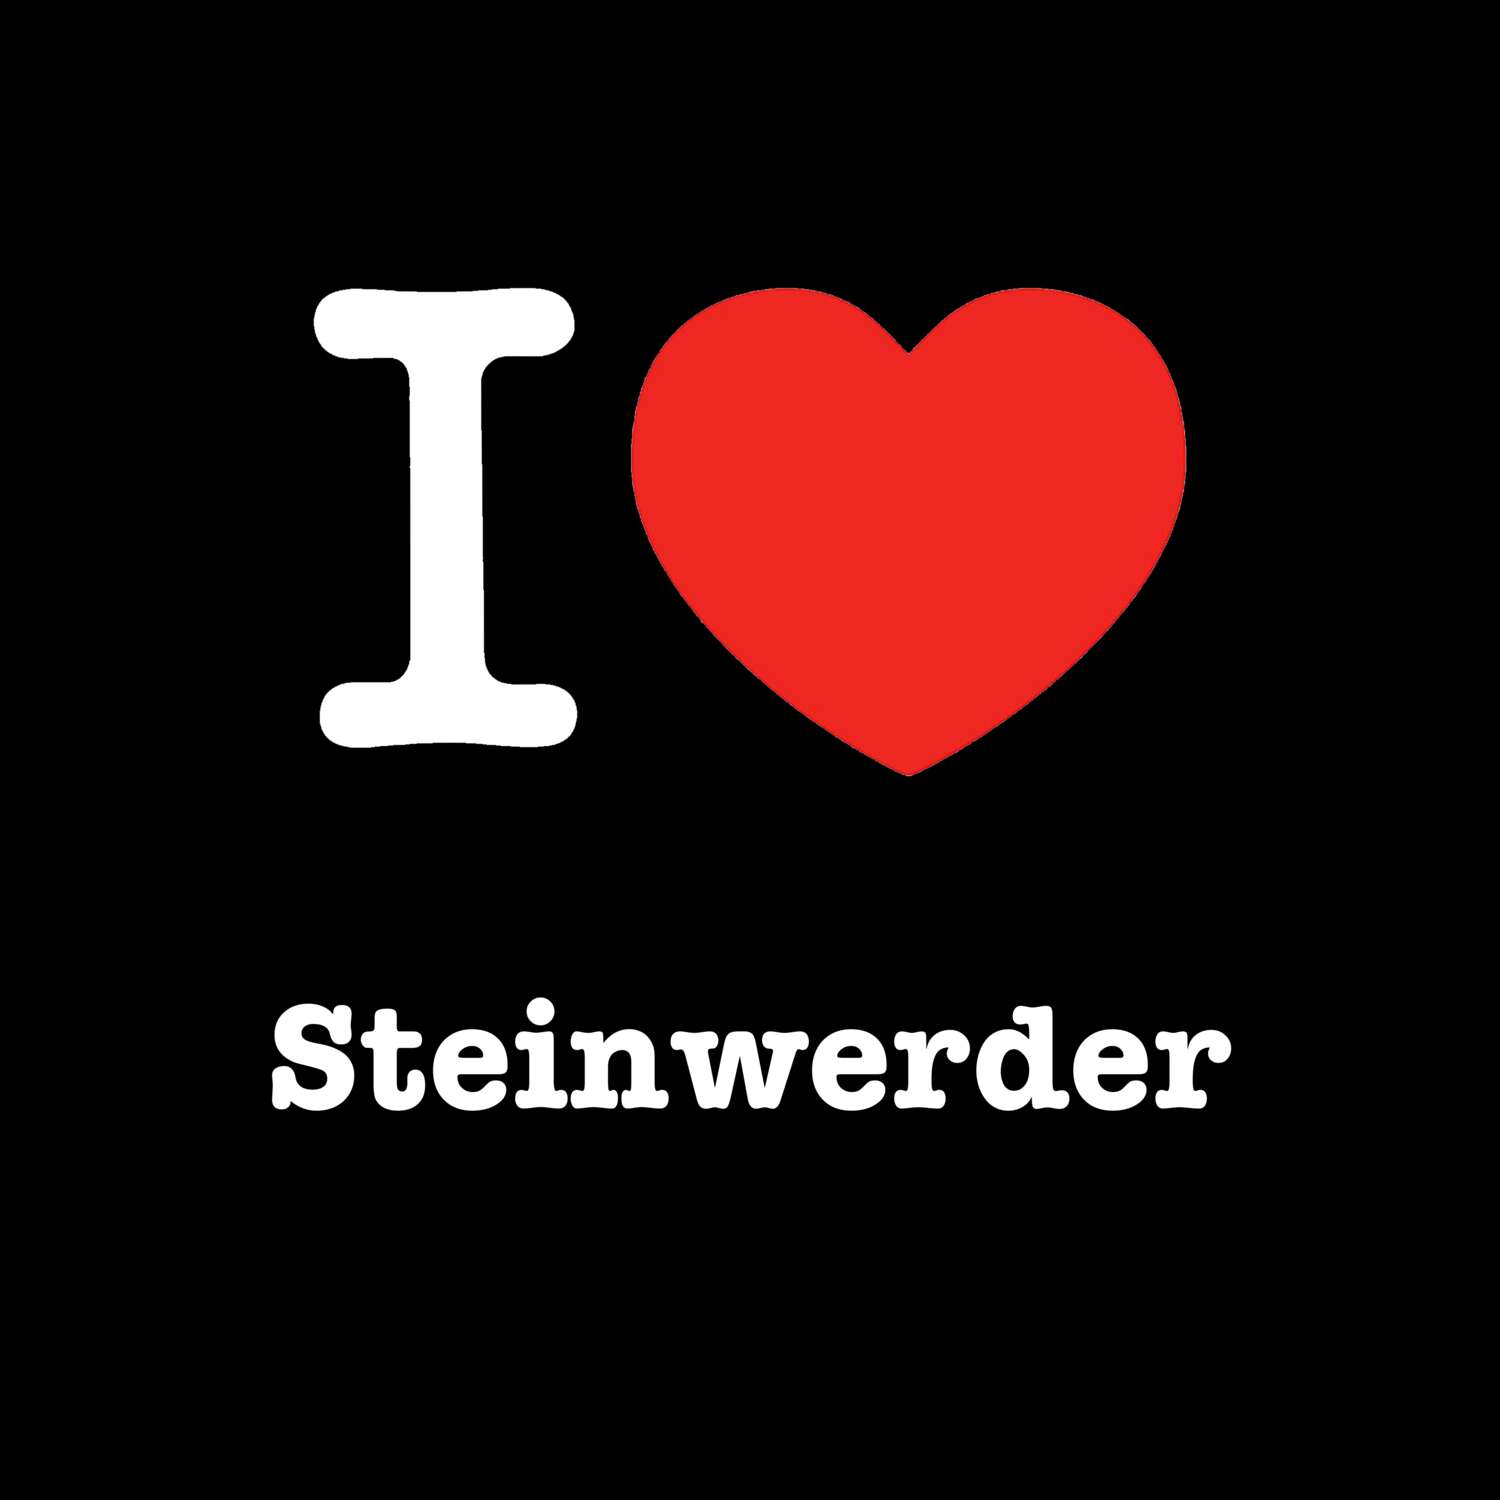 Steinwerder T-Shirt »I love«